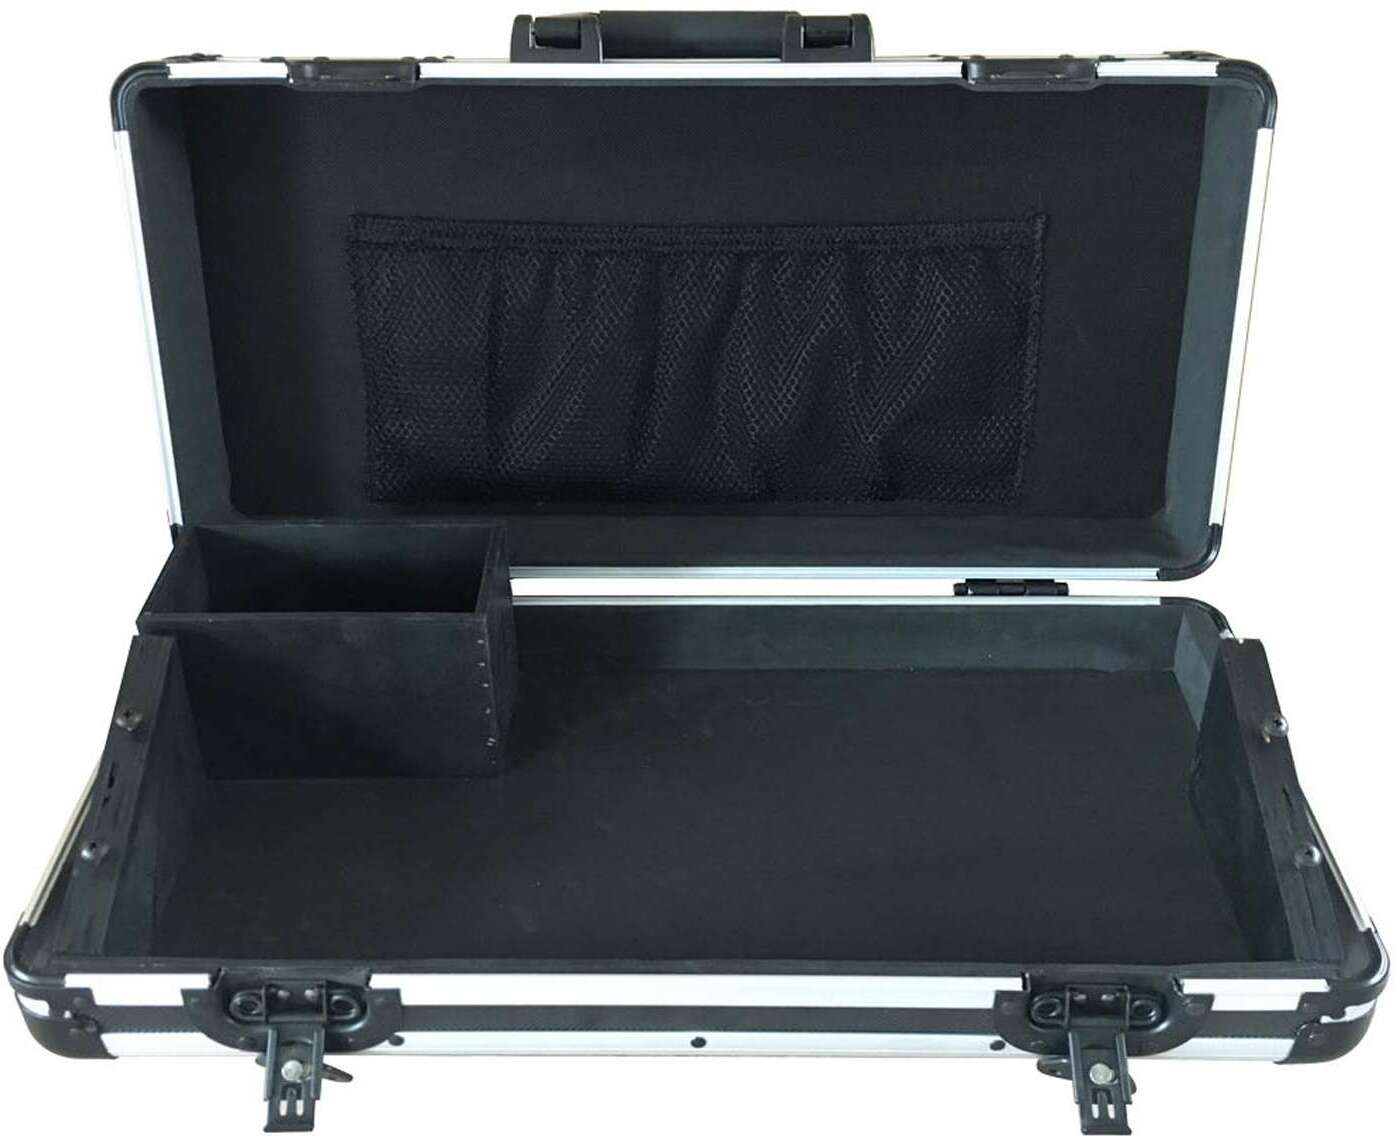 Power Acoustics Fl Dmx Controller - Flight case & koffer voor lichten - Main picture